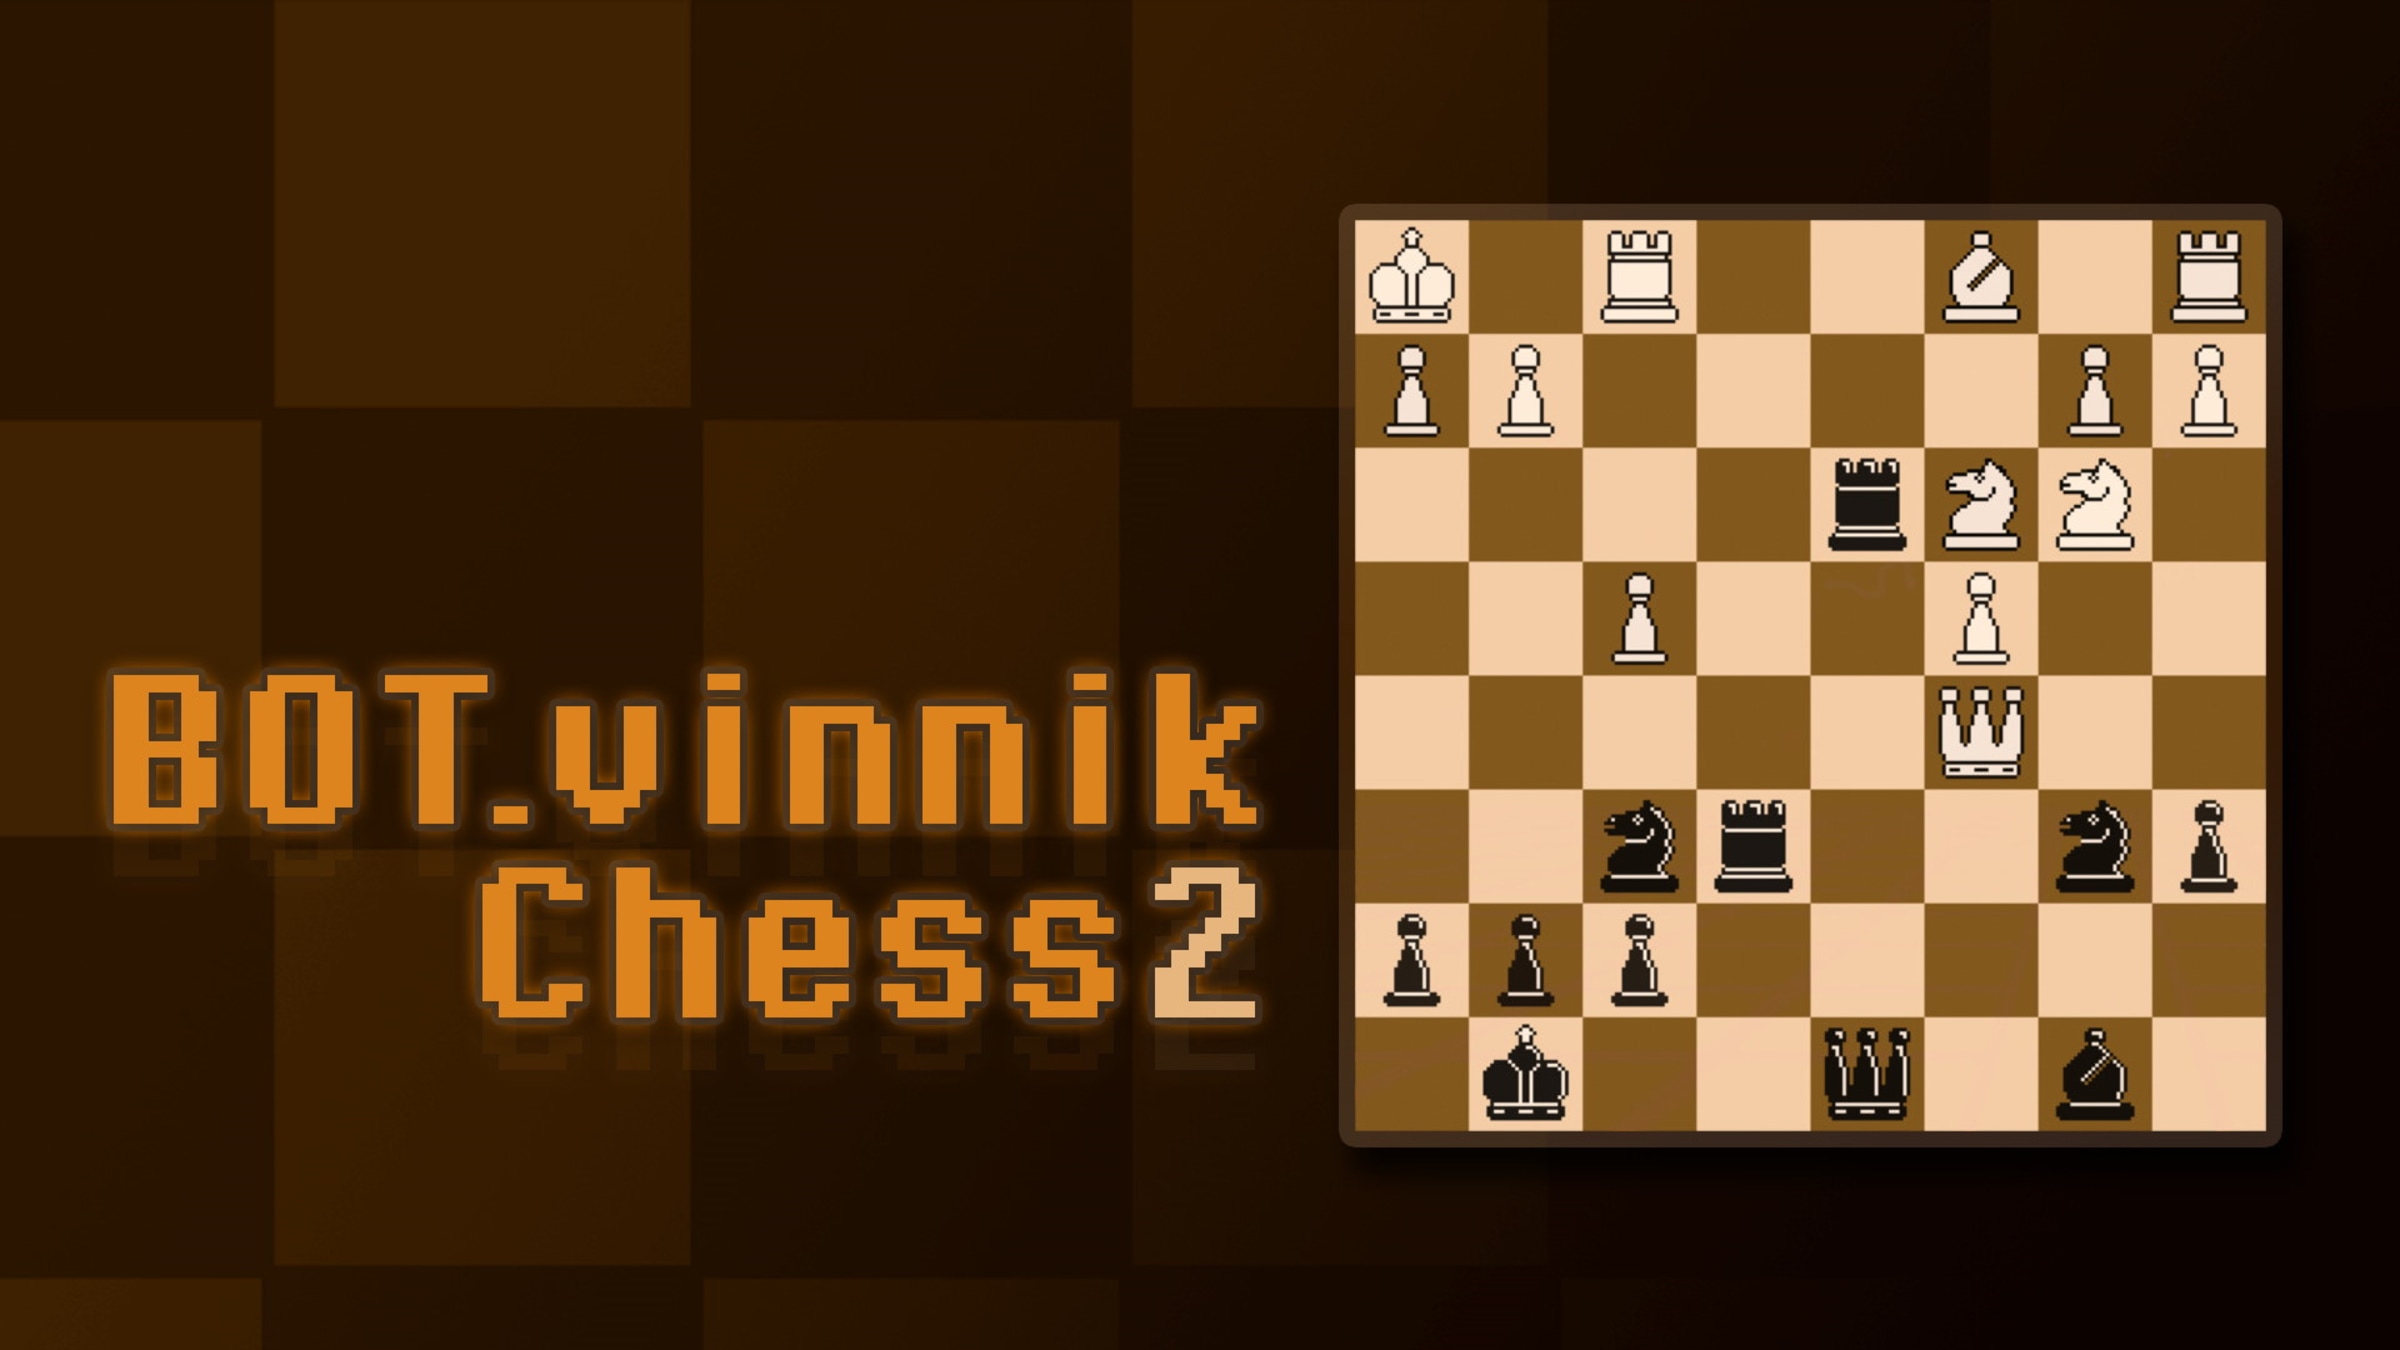 BOT.vinnik Chess